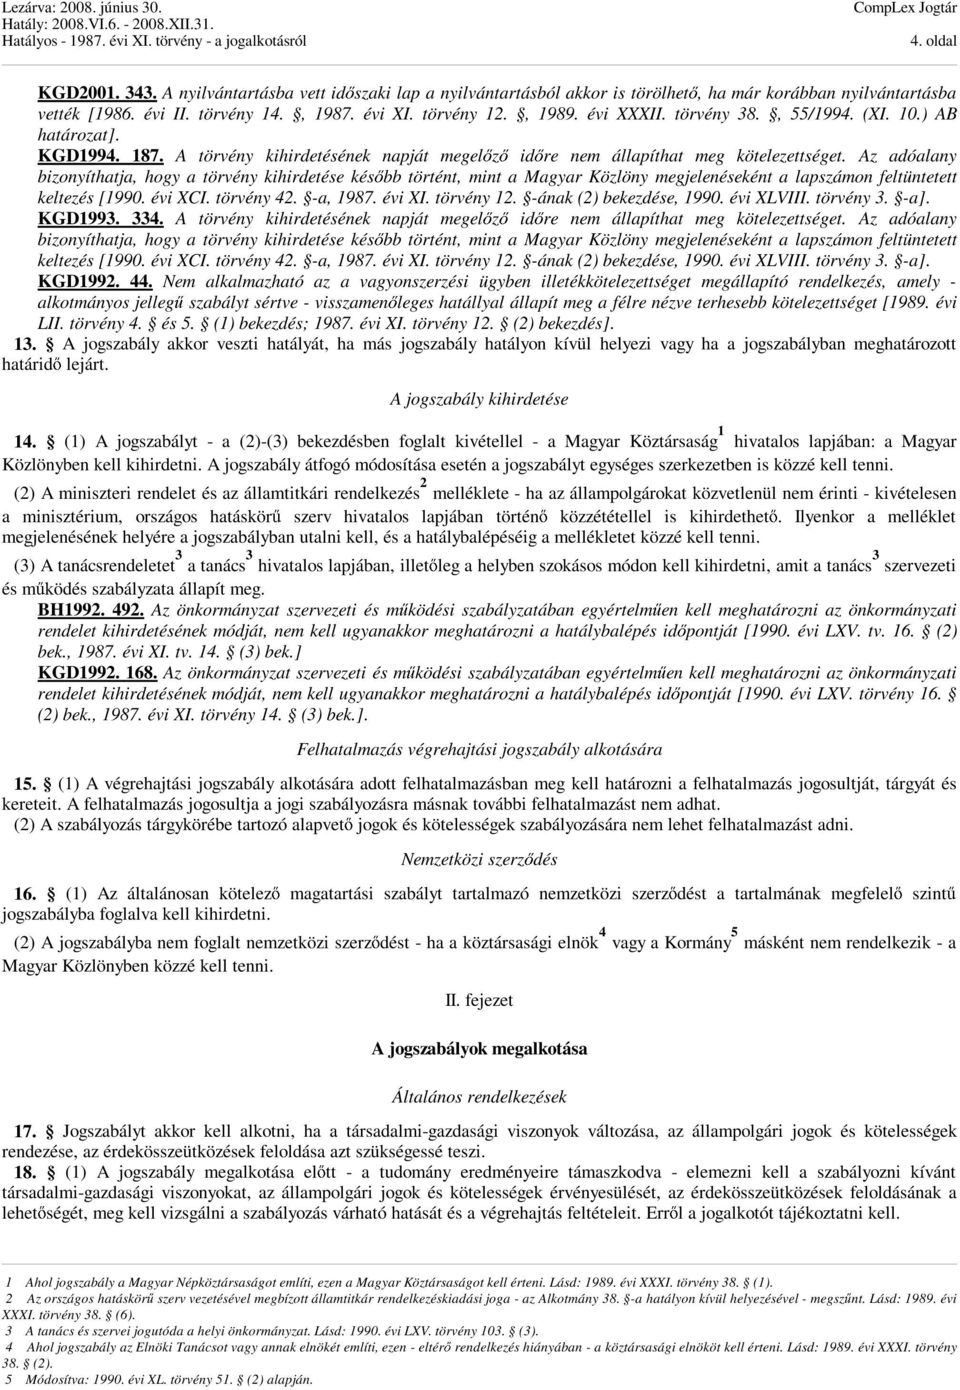 Az adóalany bizonyíthatja, hogy a törvény kihirdetése később történt, mint a Magyar Közlöny megjelenéseként a lapszámon feltüntetett keltezés [1990. évi XCI. törvény 42. -a, 1987. évi XI. törvény 12.